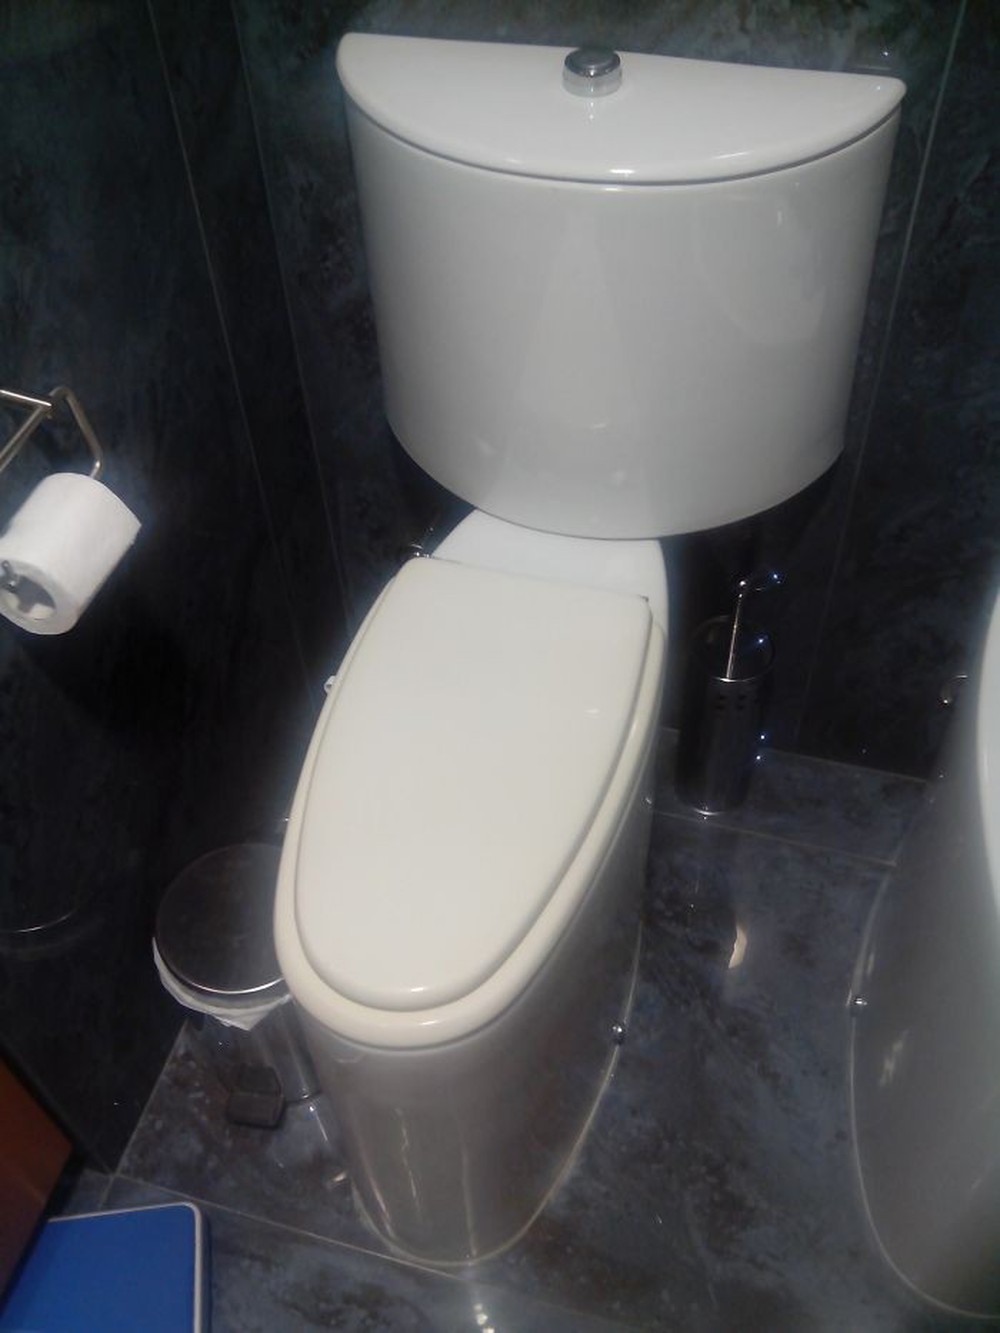 20 thiết kế nhà vệ sinh thảm họa khiến dân mạng thủ thỉ: Thôi, thà nhịn còn hơn - Ảnh 16.